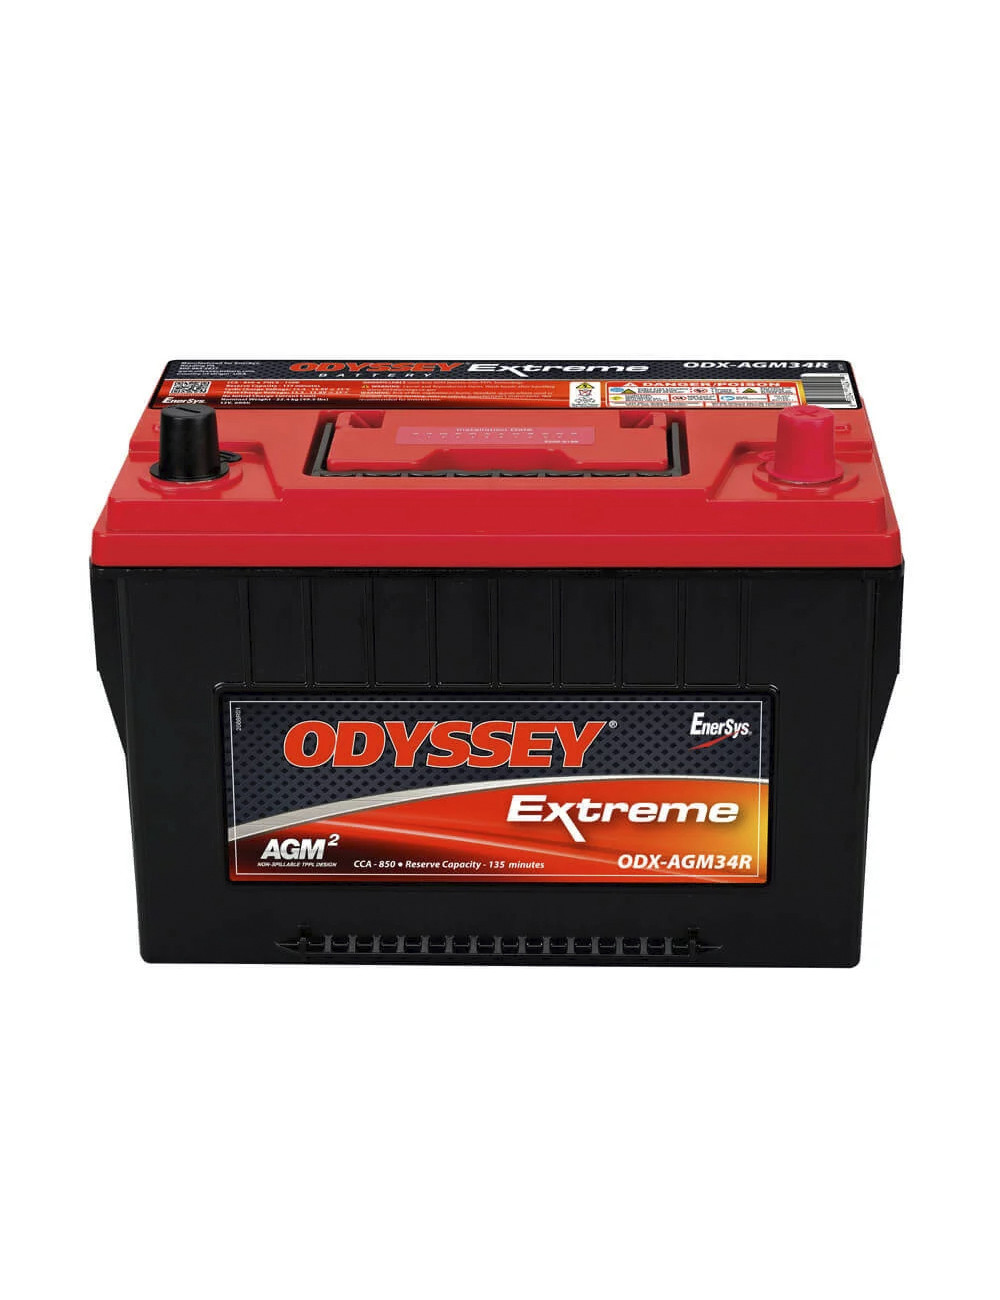 34R-PC1500 batería 12V 68Ah C20 850CCA Odyssey Extreme ODX-AGM34R - ODX-AGM34R -  - 0635241140415 - 2